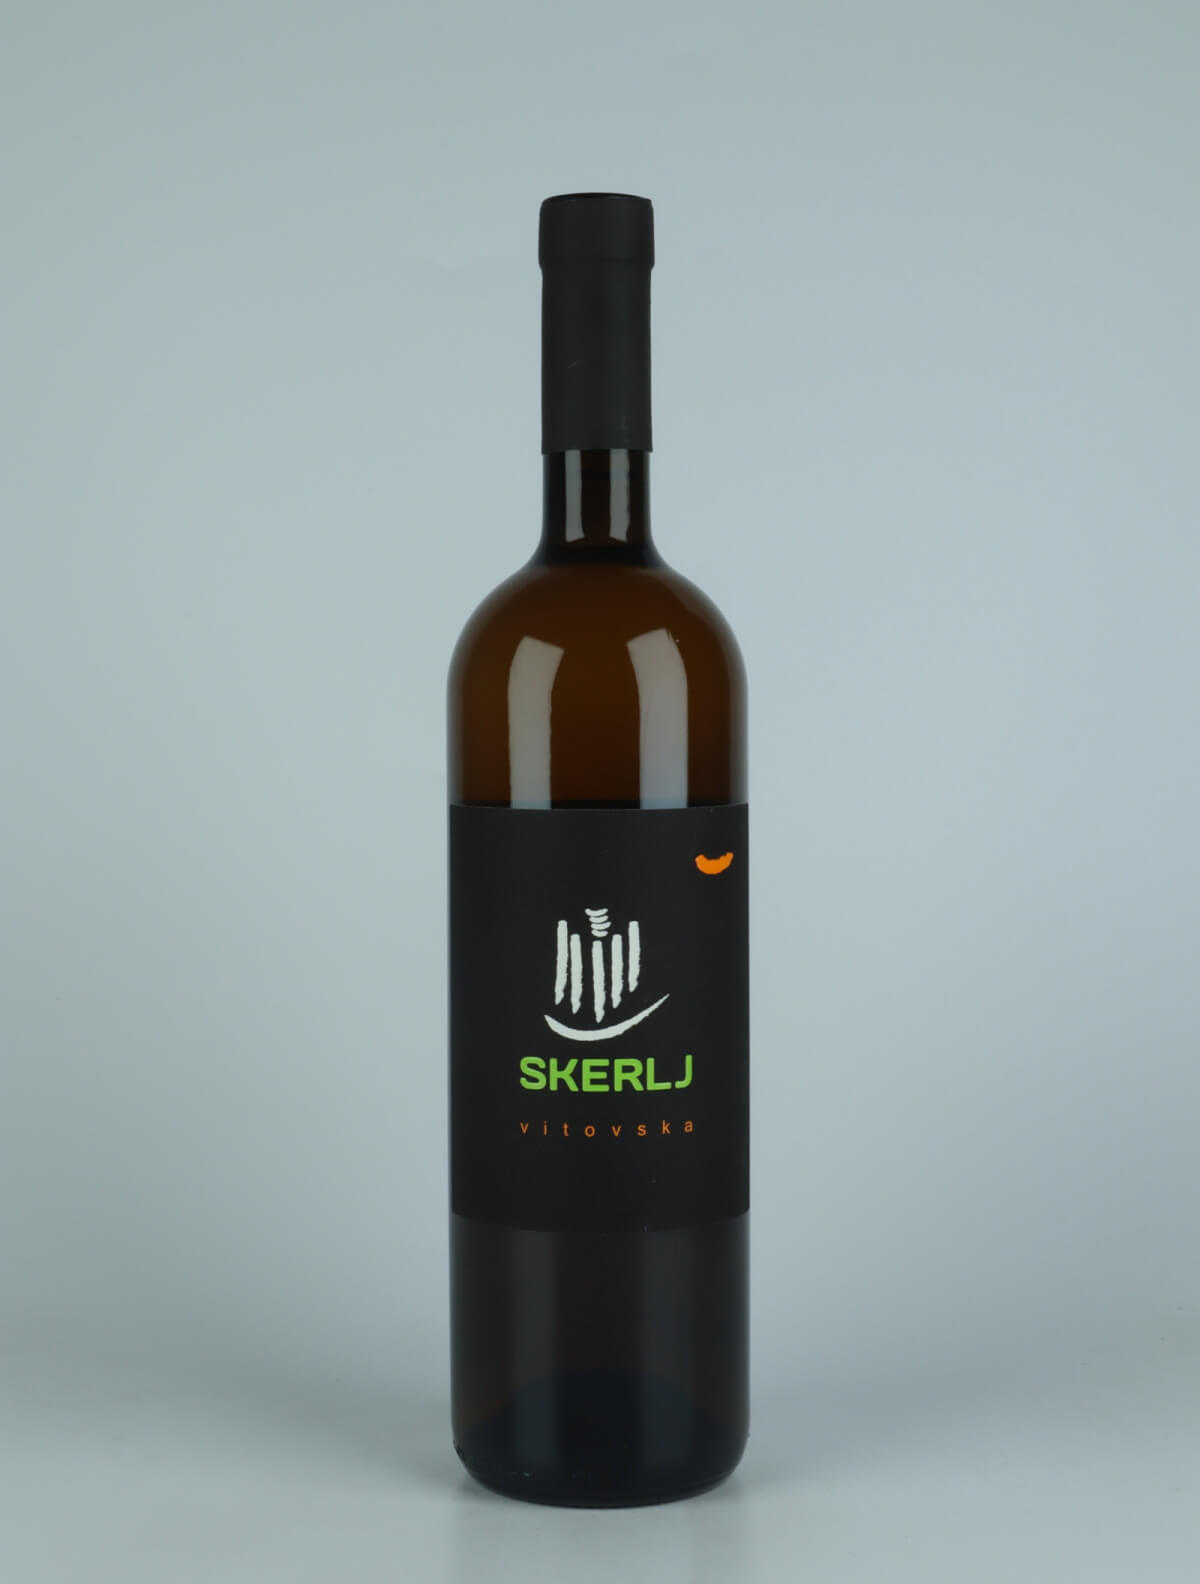 A bottle 2021 Vitovska Orange wine from Skerlj, Friuli in Italy